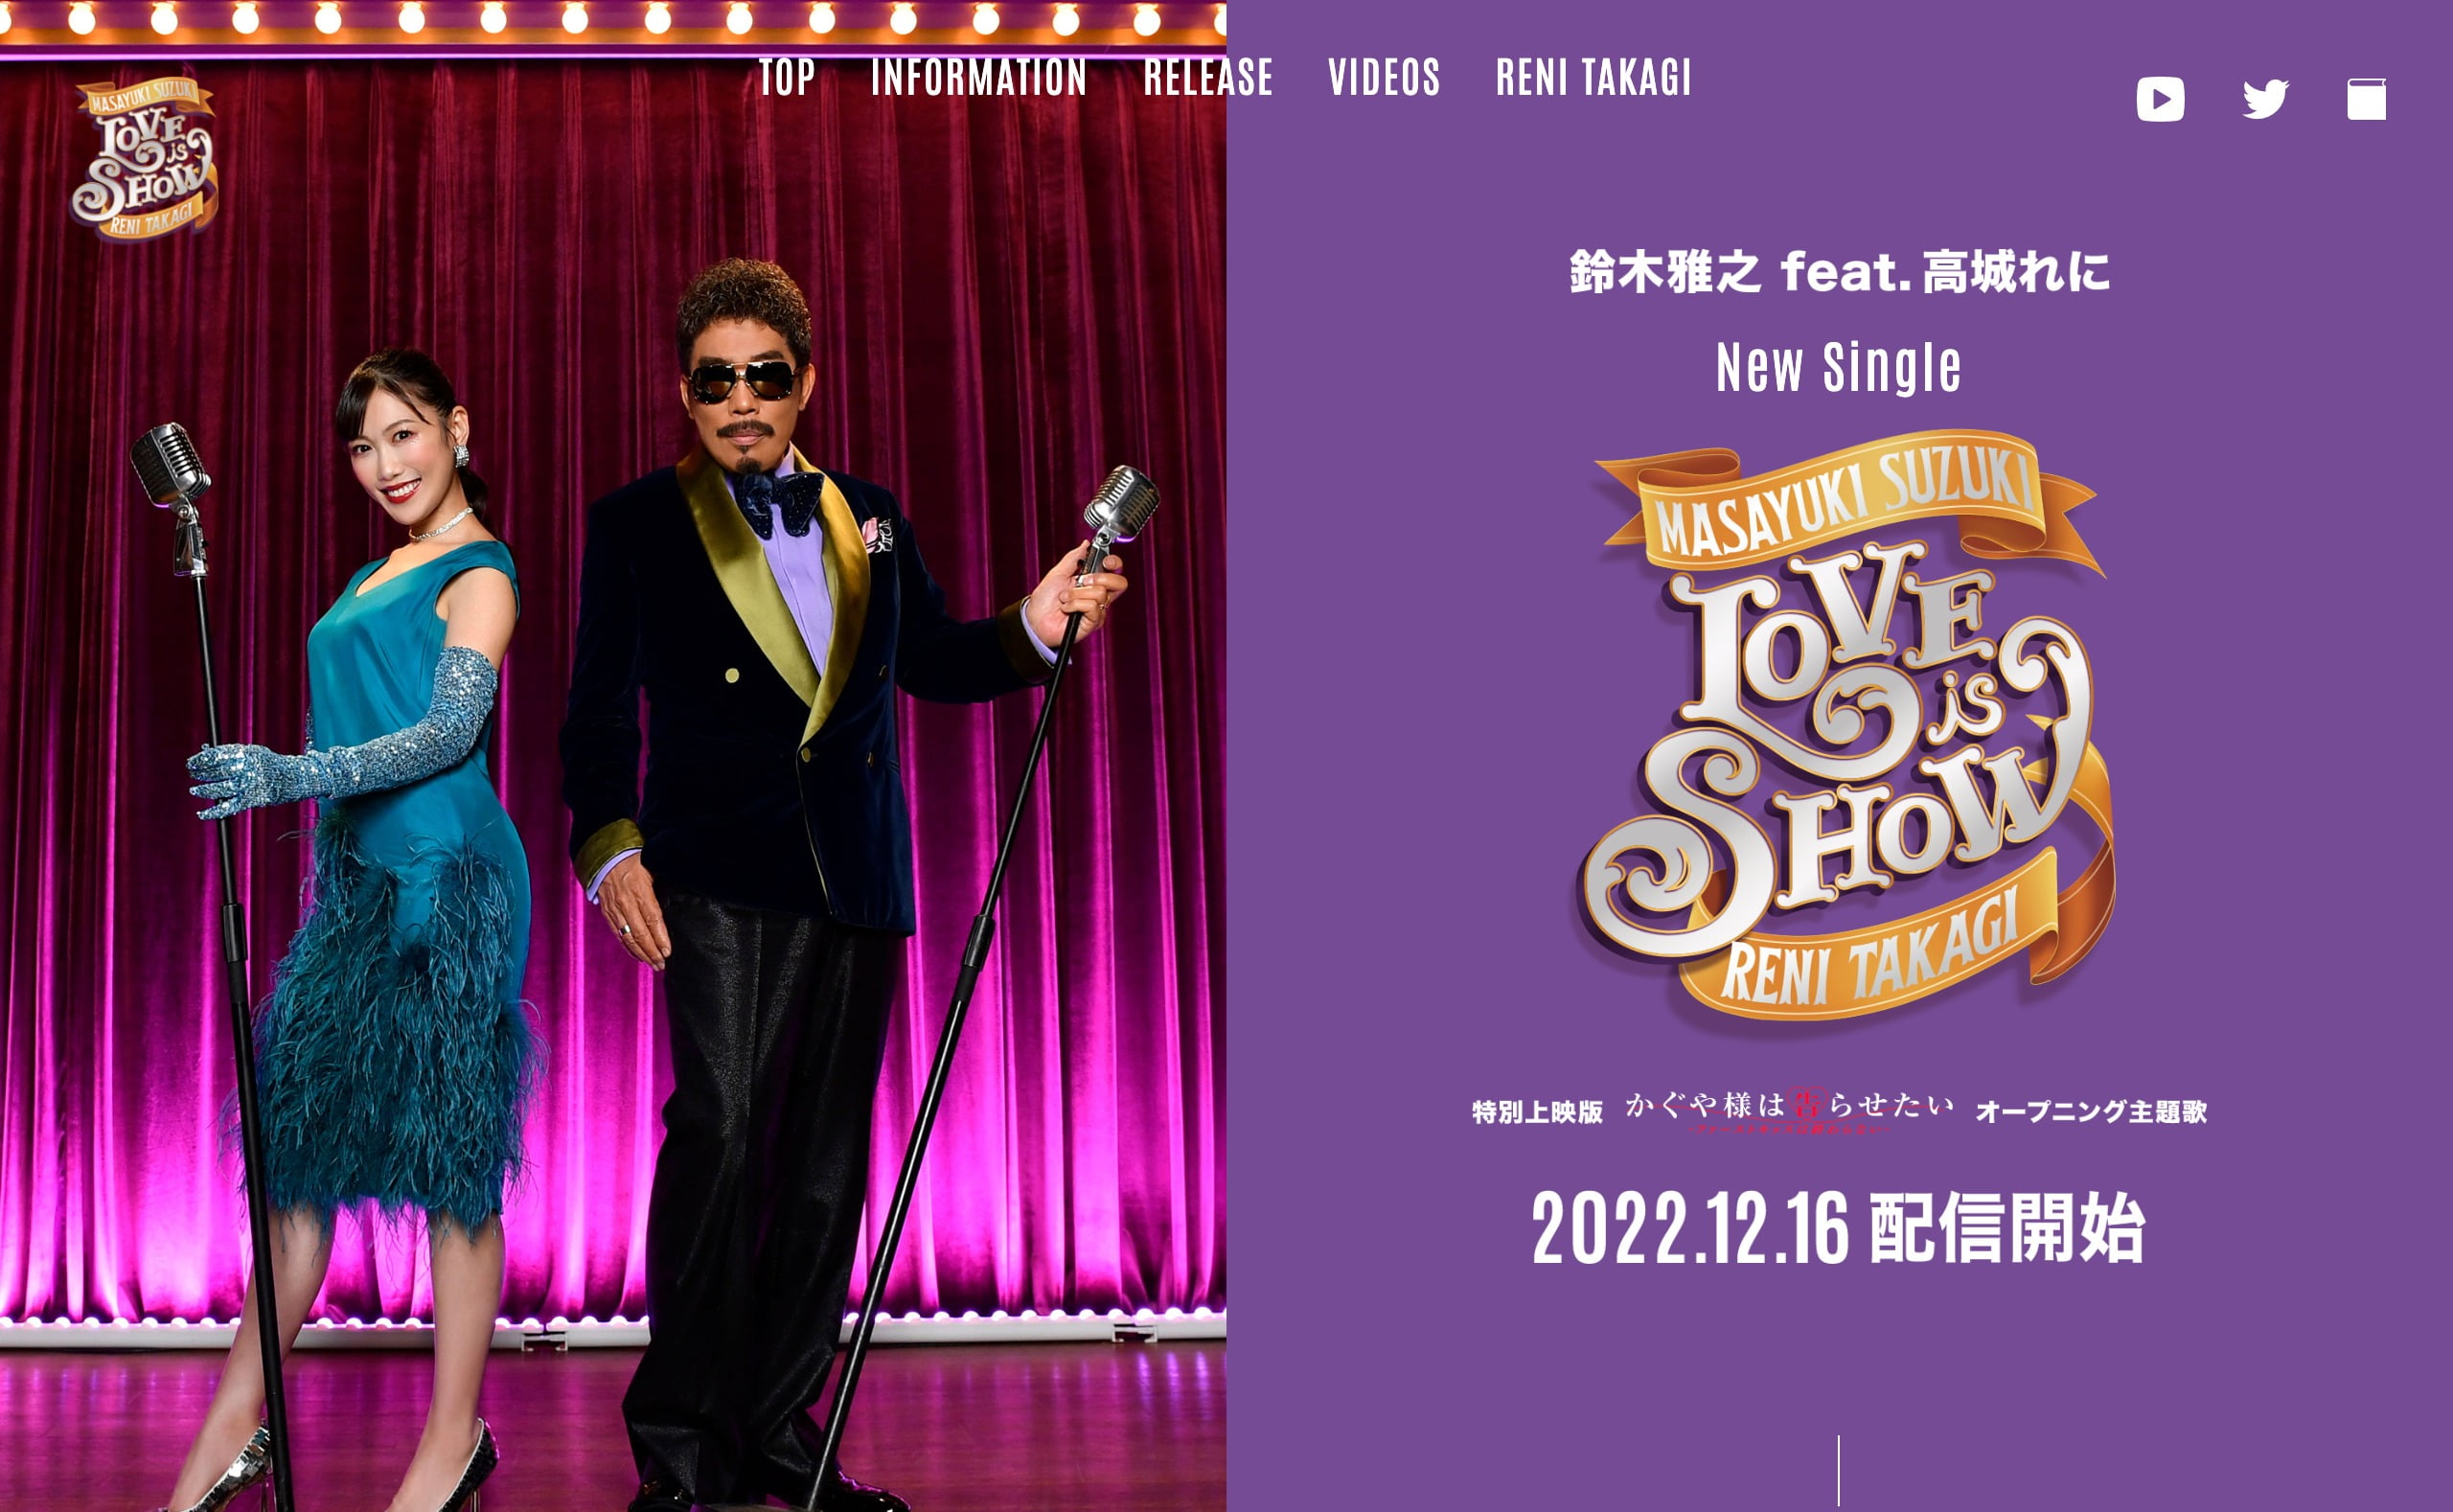 鈴木雅之 feat. 高城れに | Love is Show | MUSIC WEB CLIPS - バンド・アーティスト・音楽関連のWEBデザイン  ギャラリーサイト